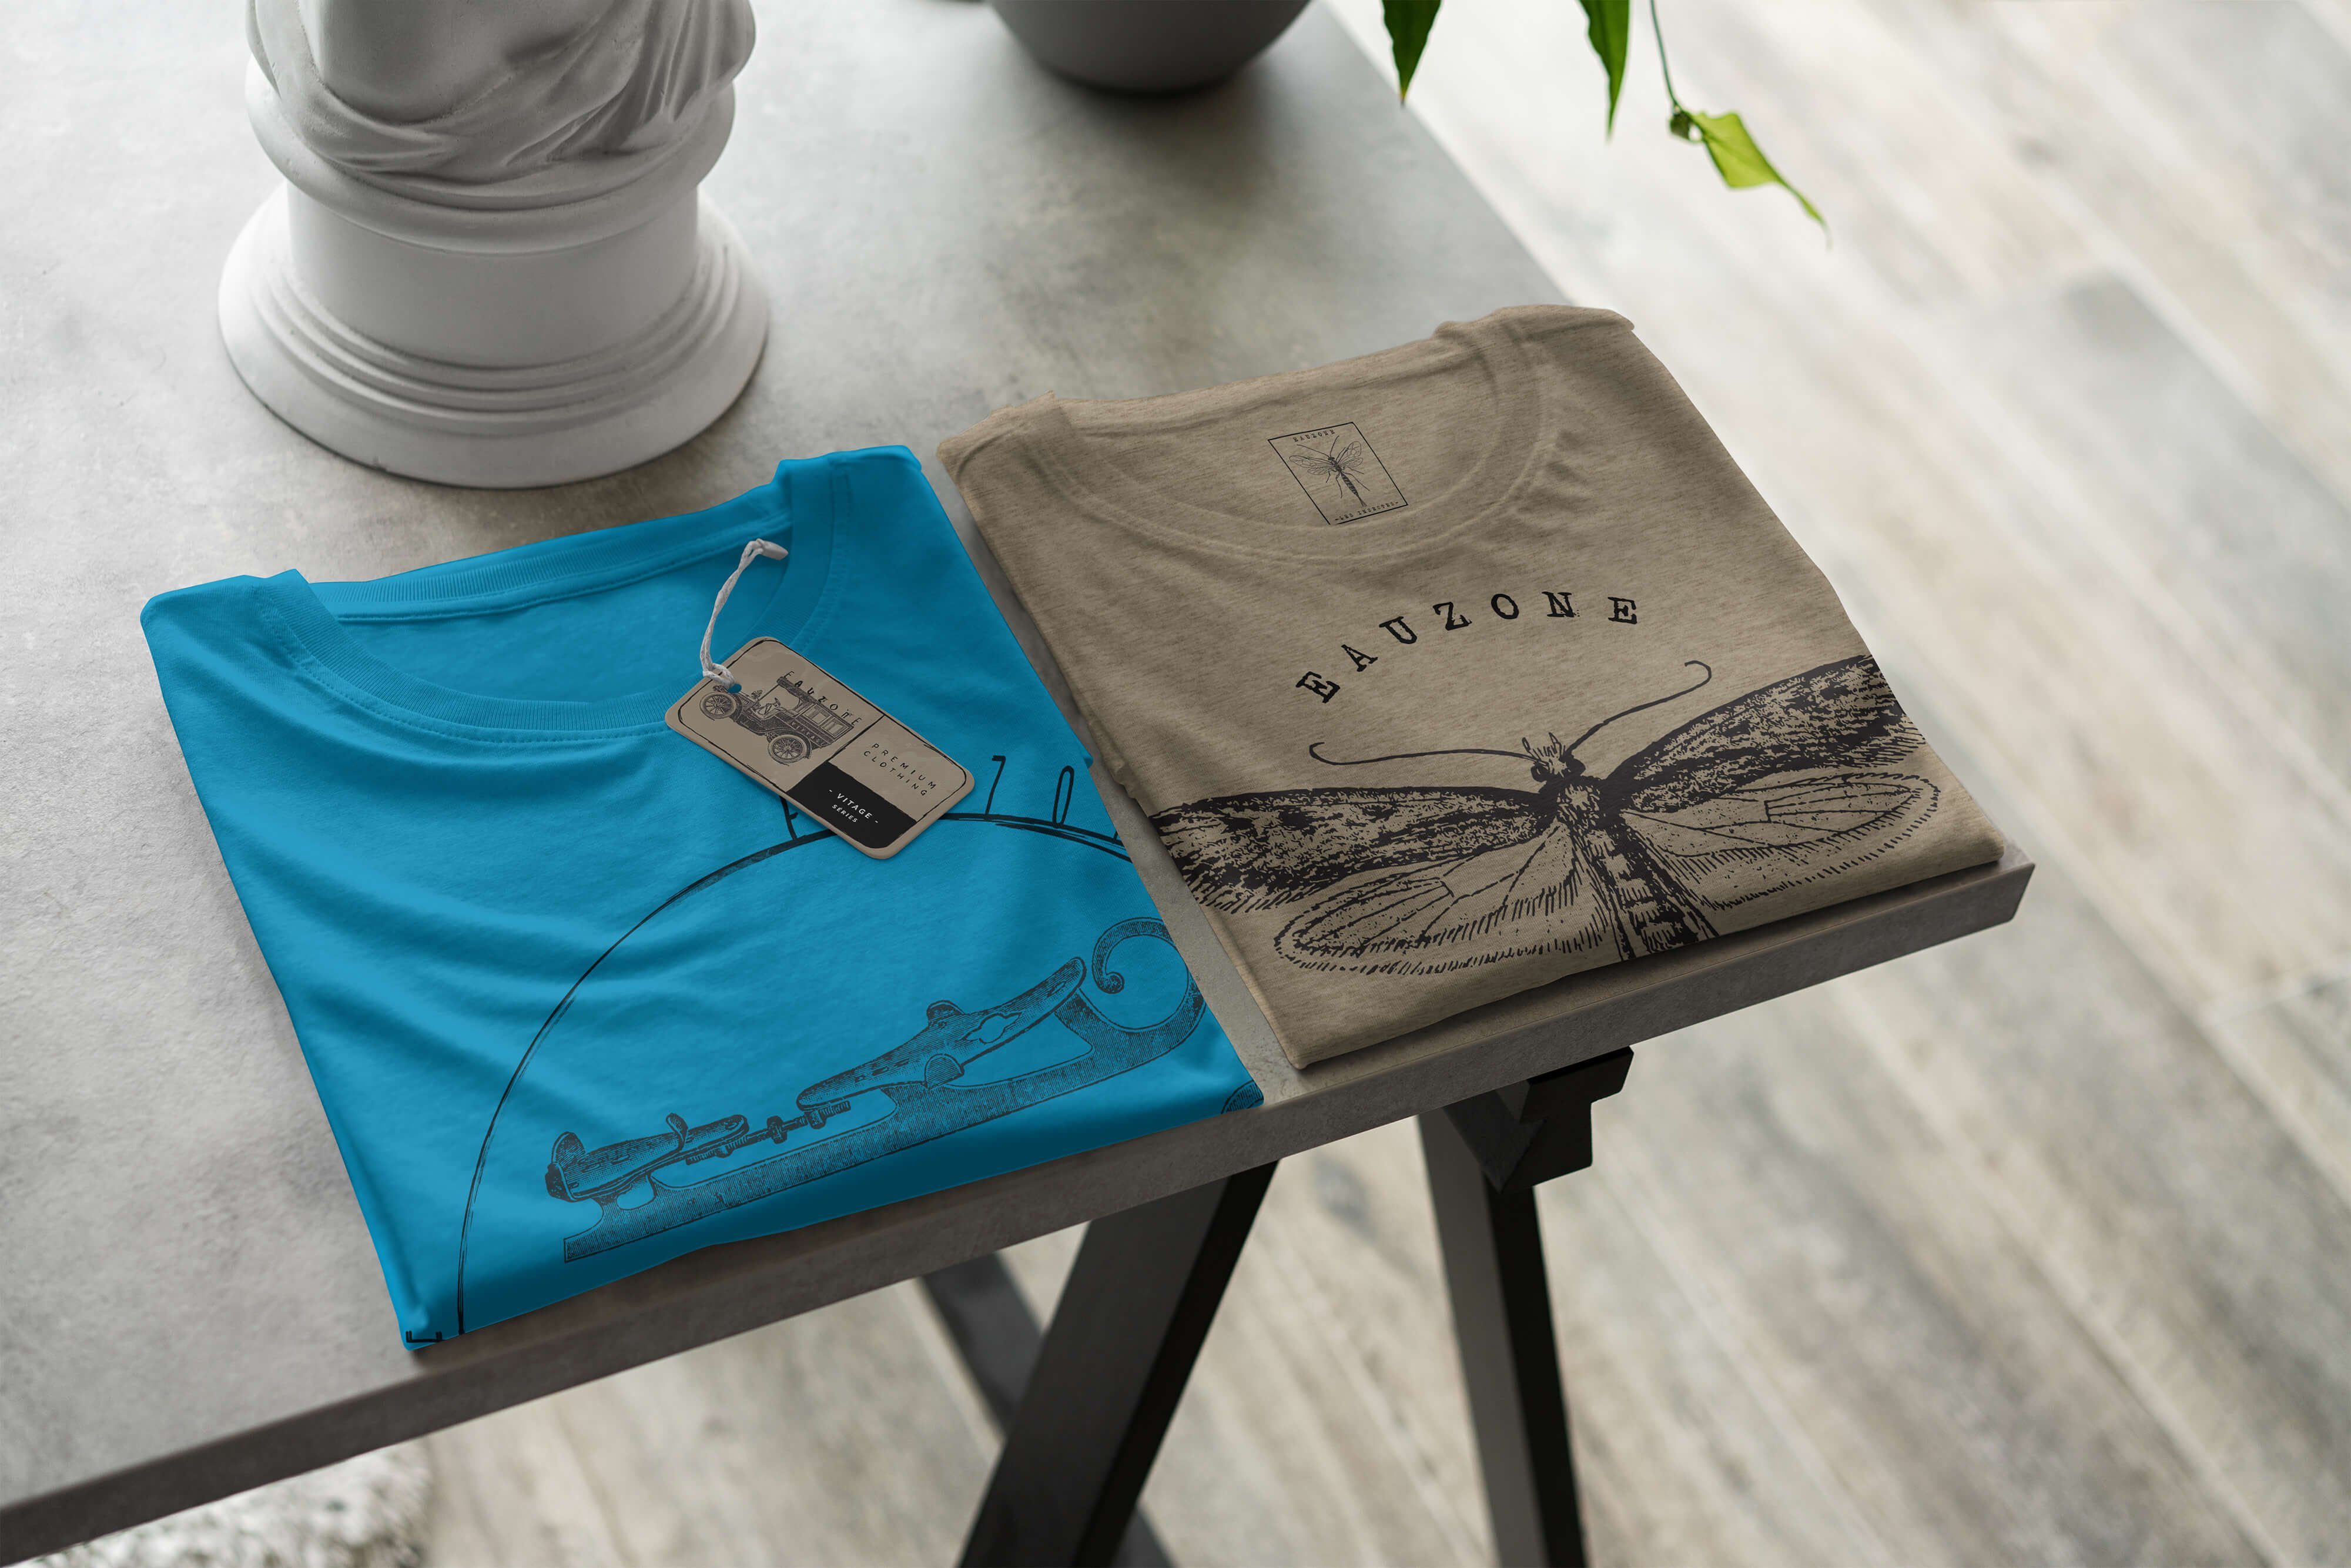 Sinus Art T-Shirt Herren Vintage Schlittschuhe T-Shirt Atoll